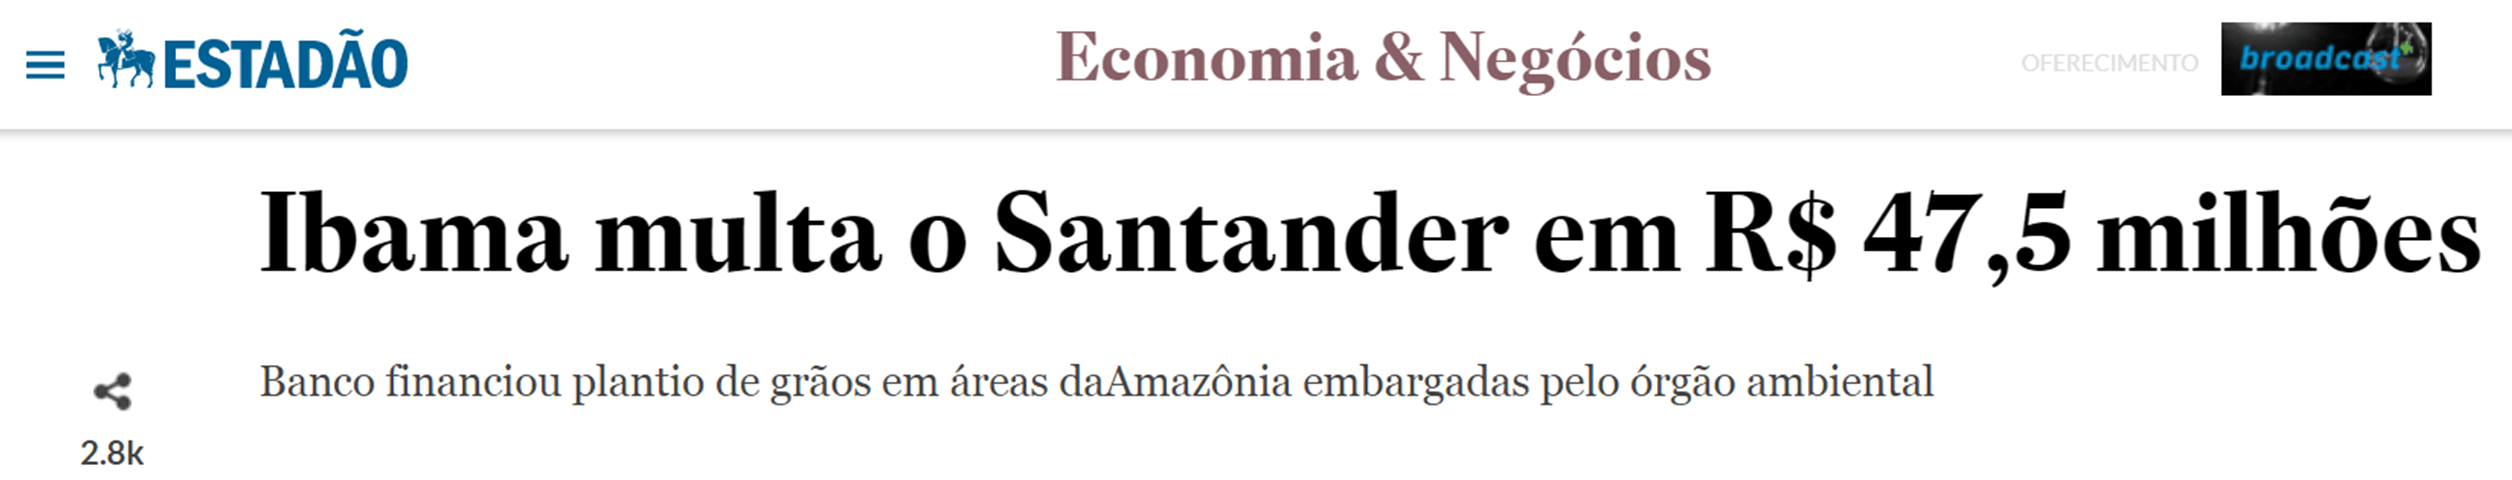 O Santander foi multado por financiar plantio em áreas embargada Fonte: Estadão, 2016 